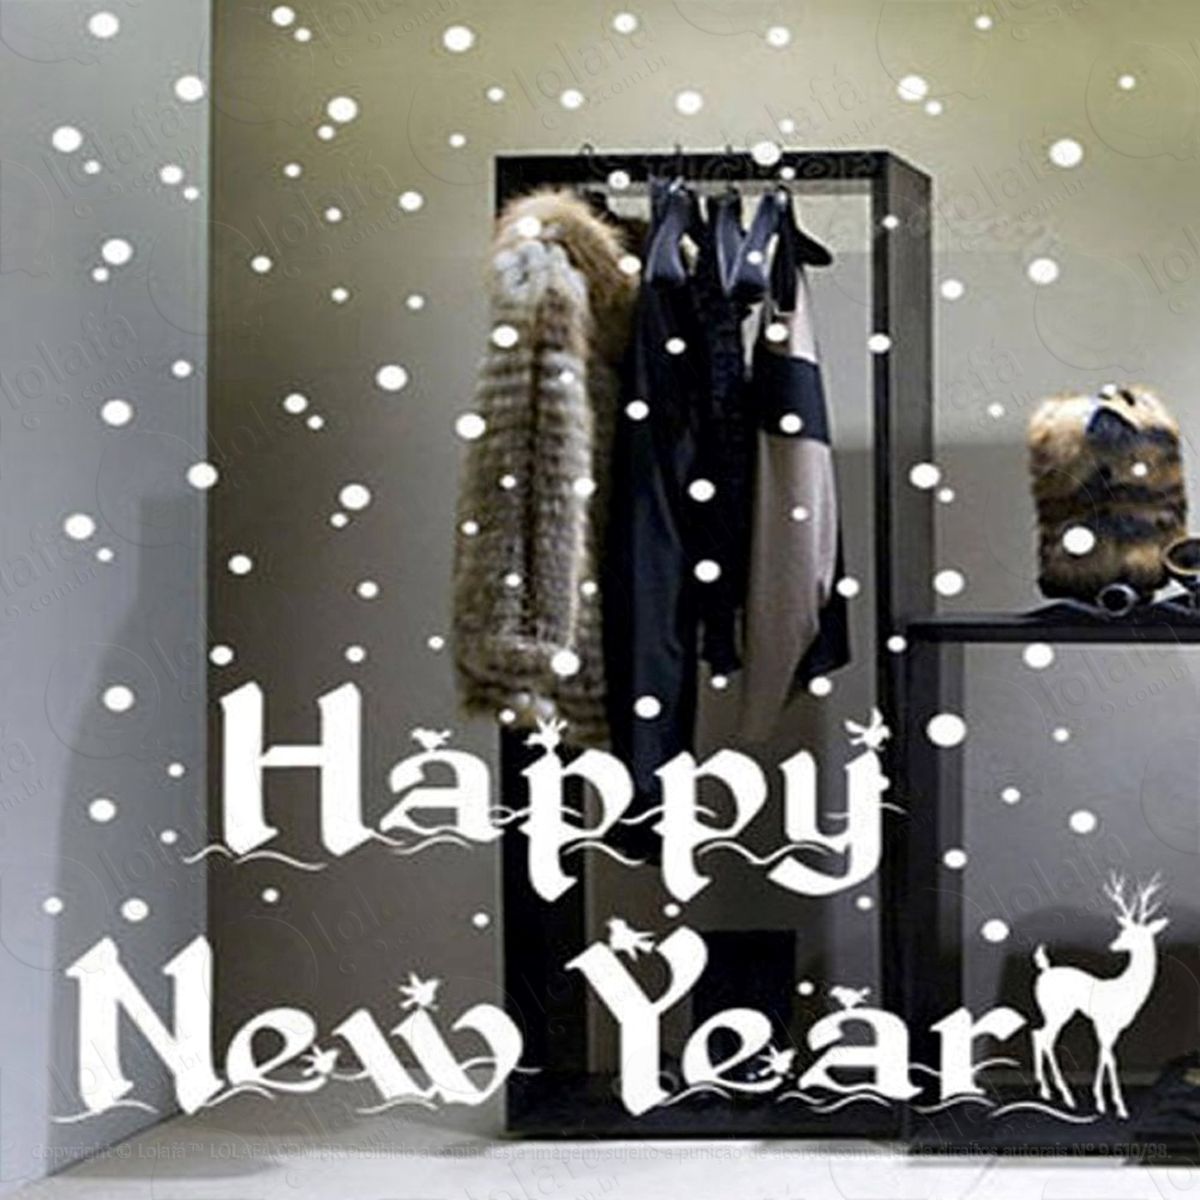 feliz ano novo adesivo de natal para vitrine, parede, porta de vidro - decoração natalina mod:92